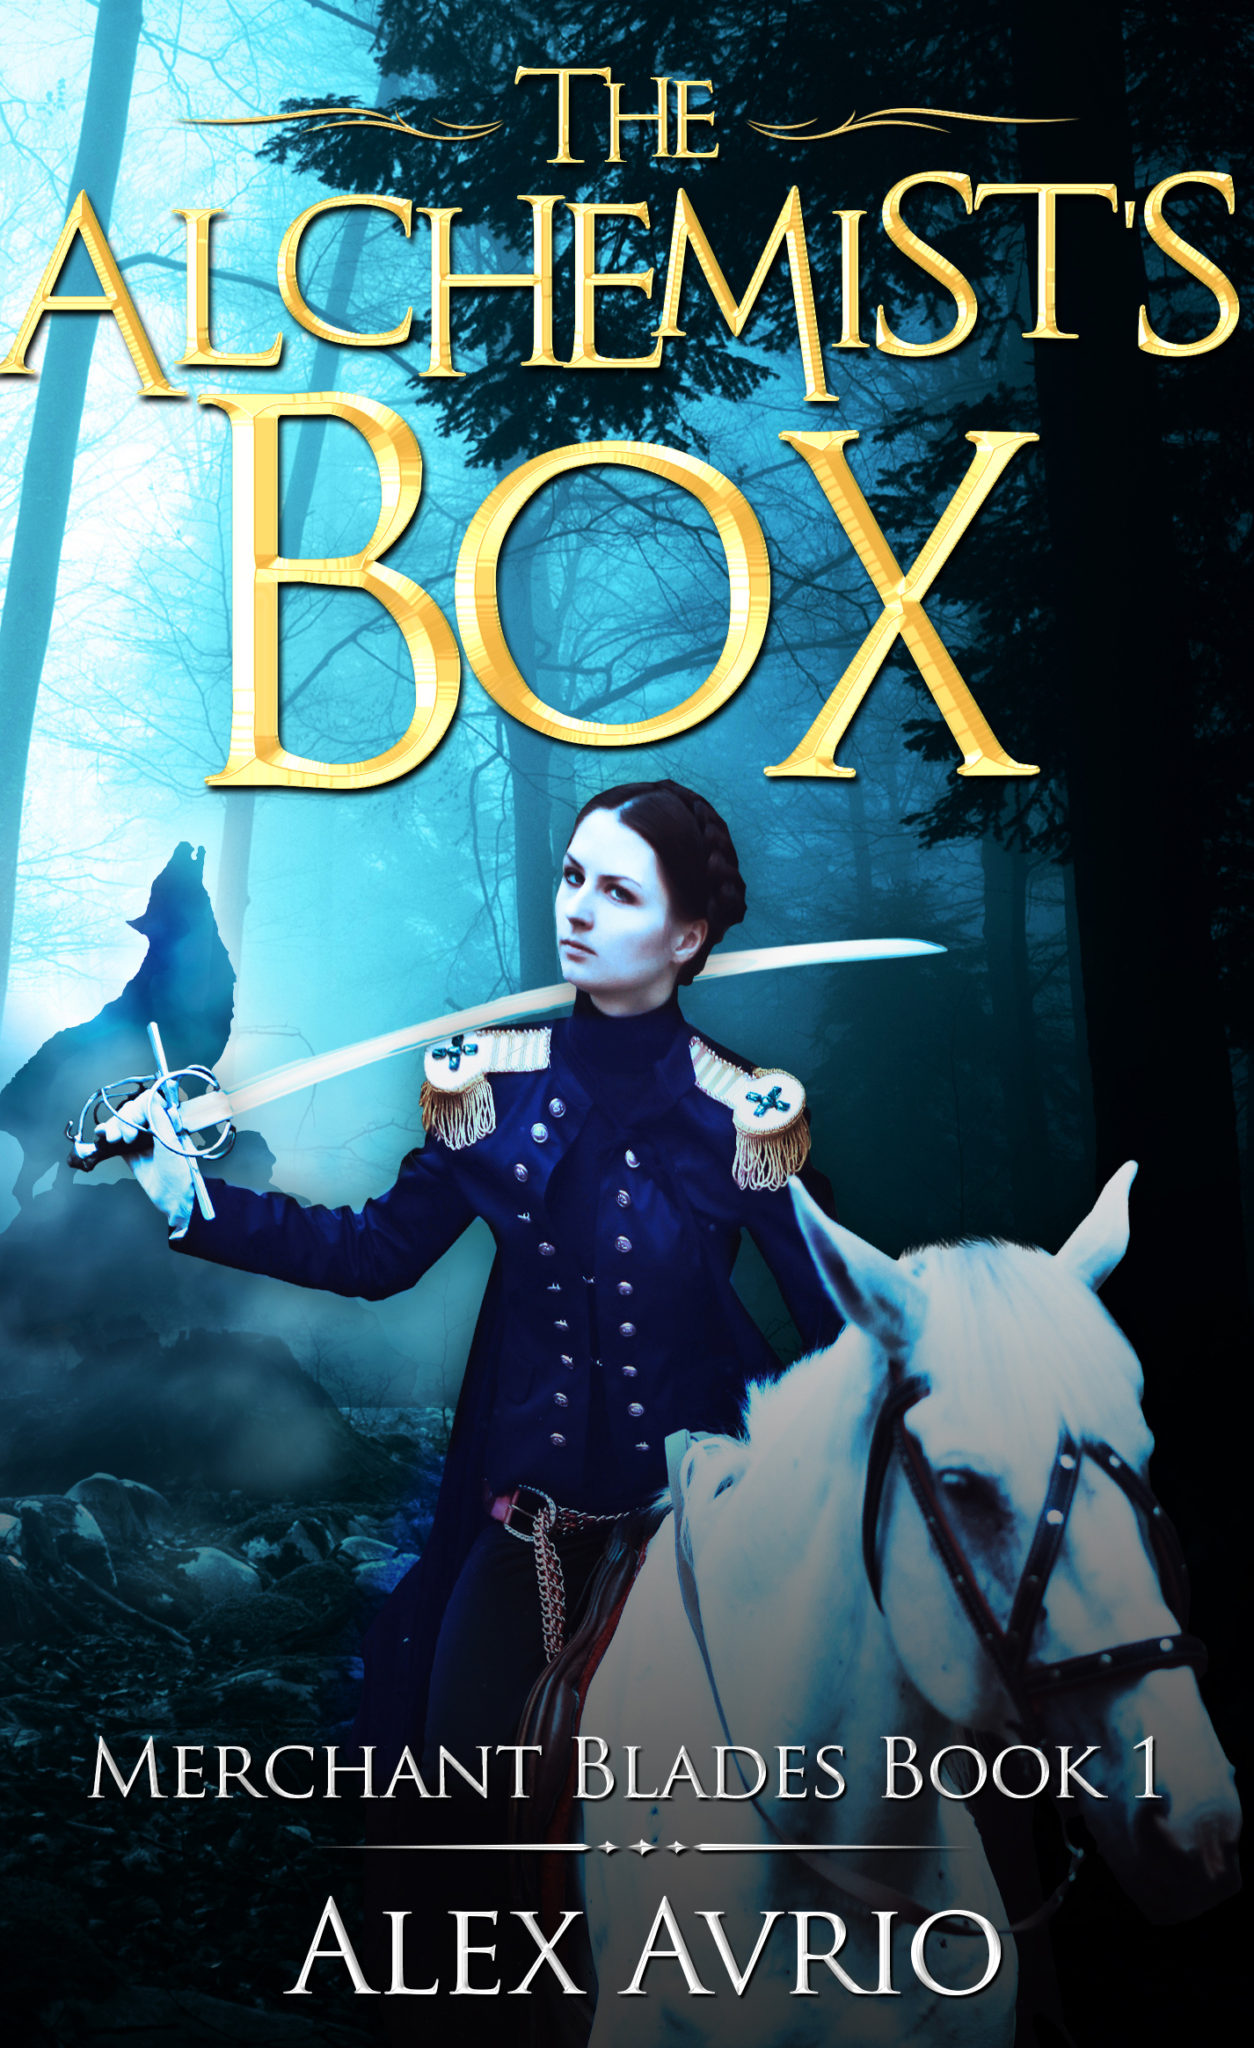 FREE: The Alchemist’s Box by Alex Avrio